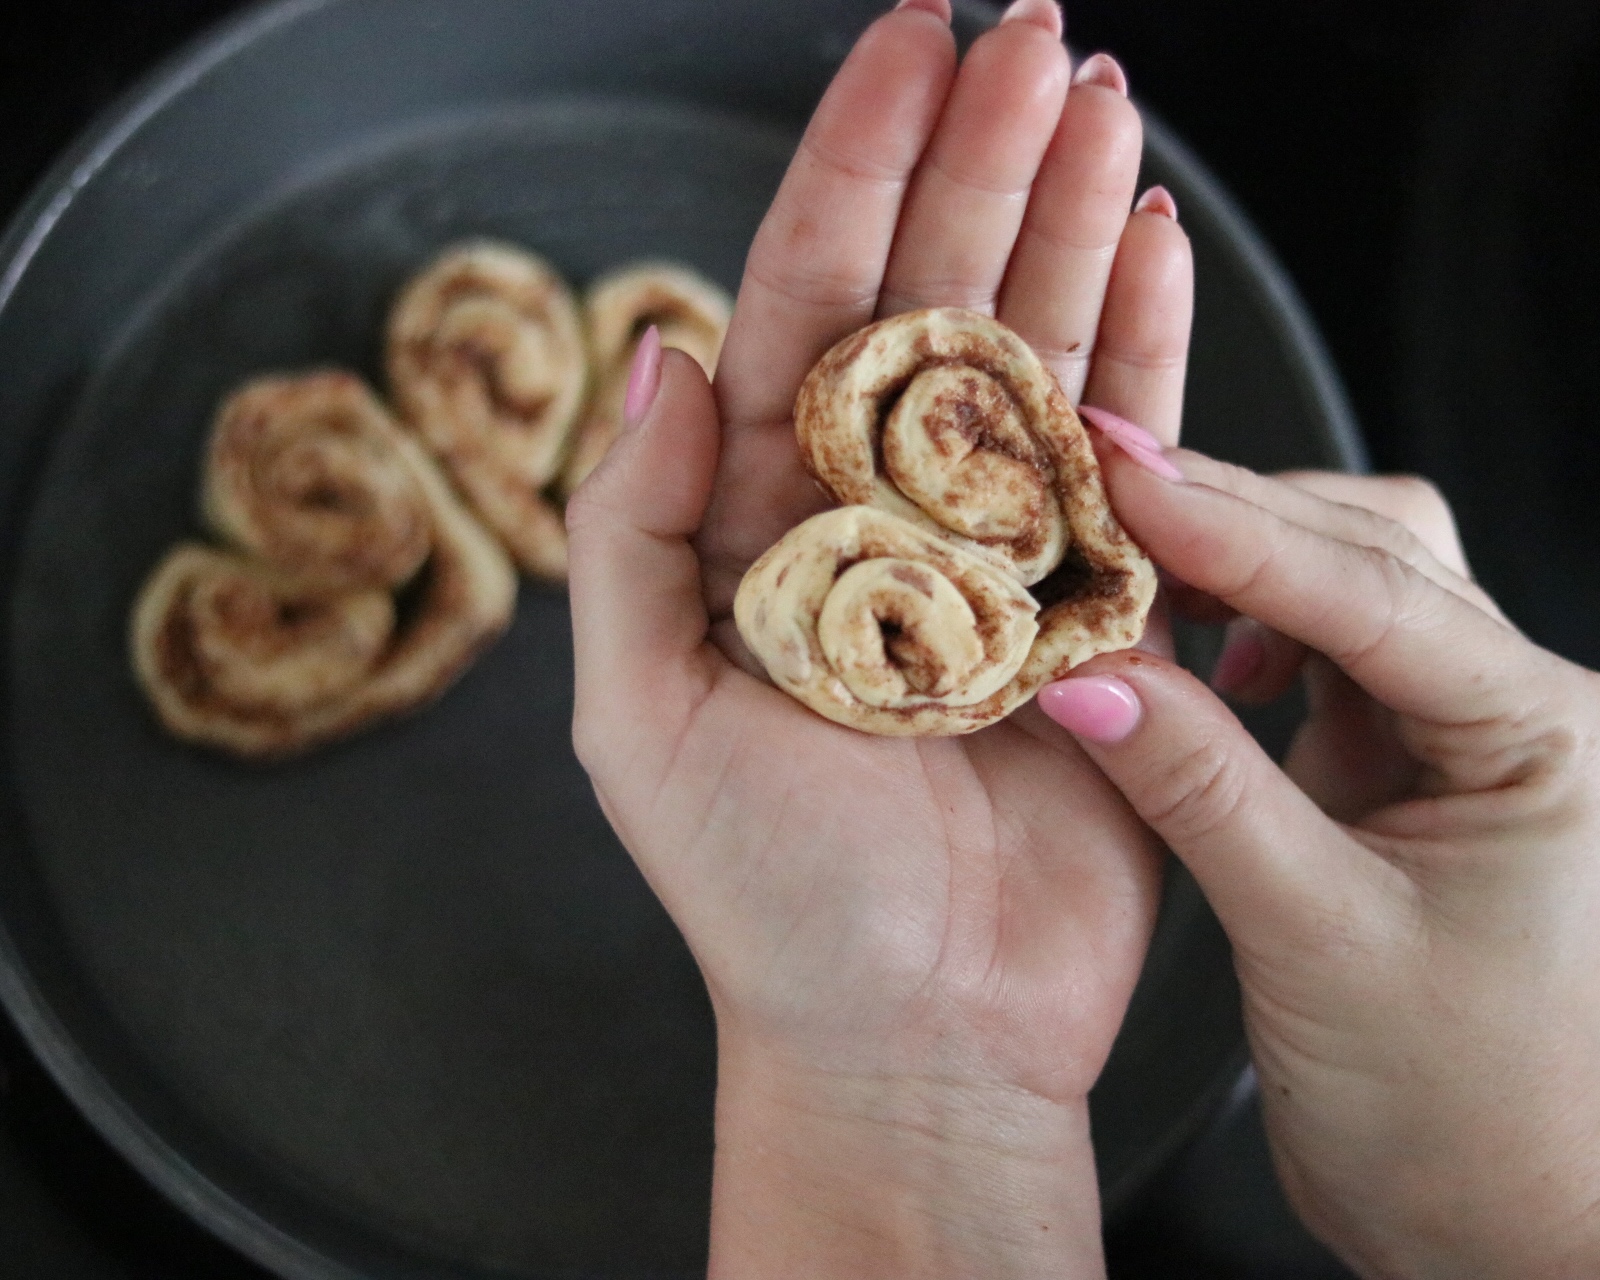 How to make Pillsbury heart shaped cinnamon rolls